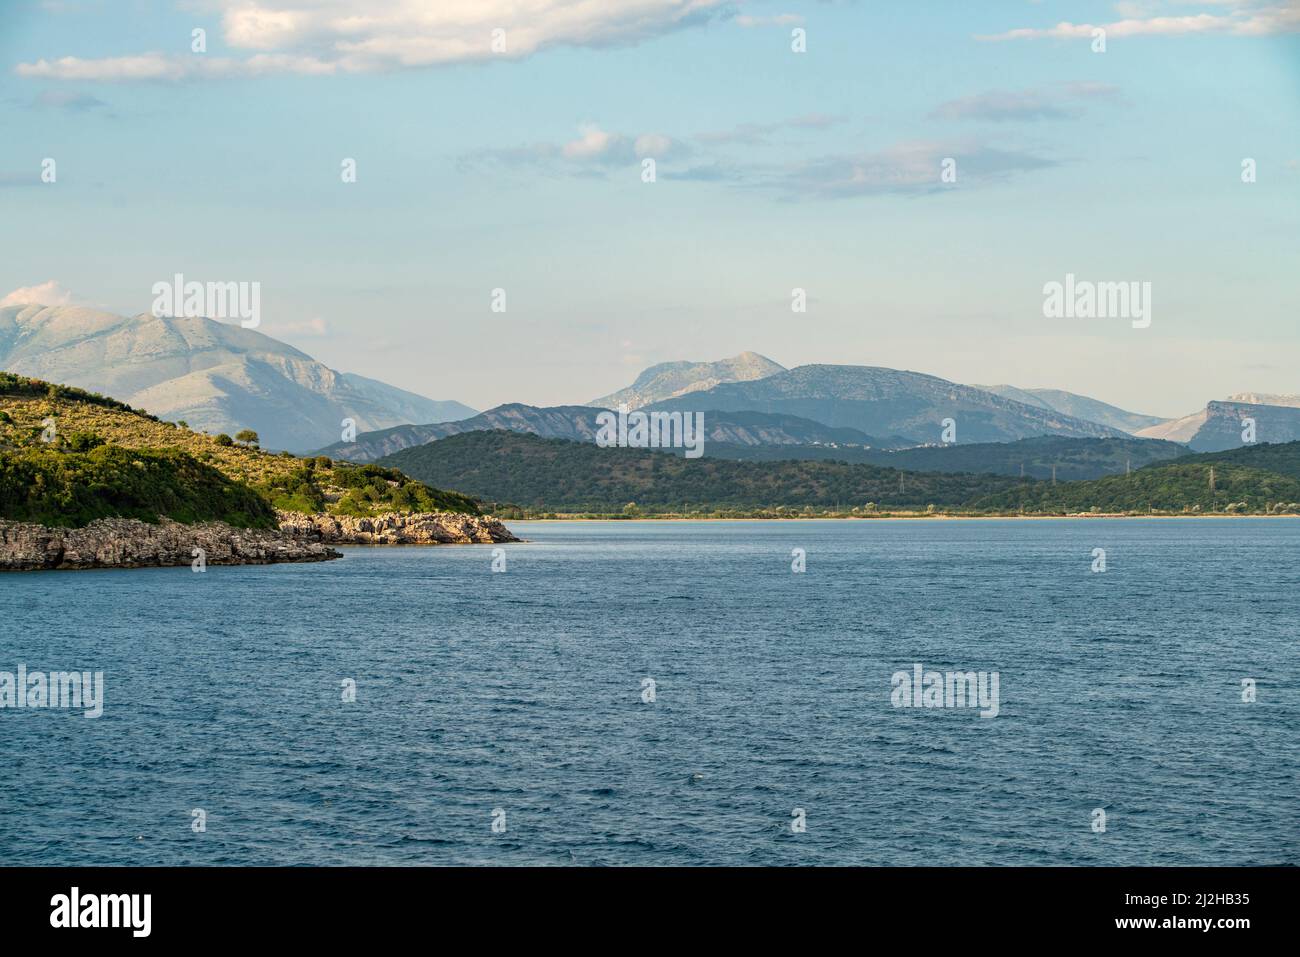 Greece, Igoumenitsa, Sea surrounded with hills Stock Photo